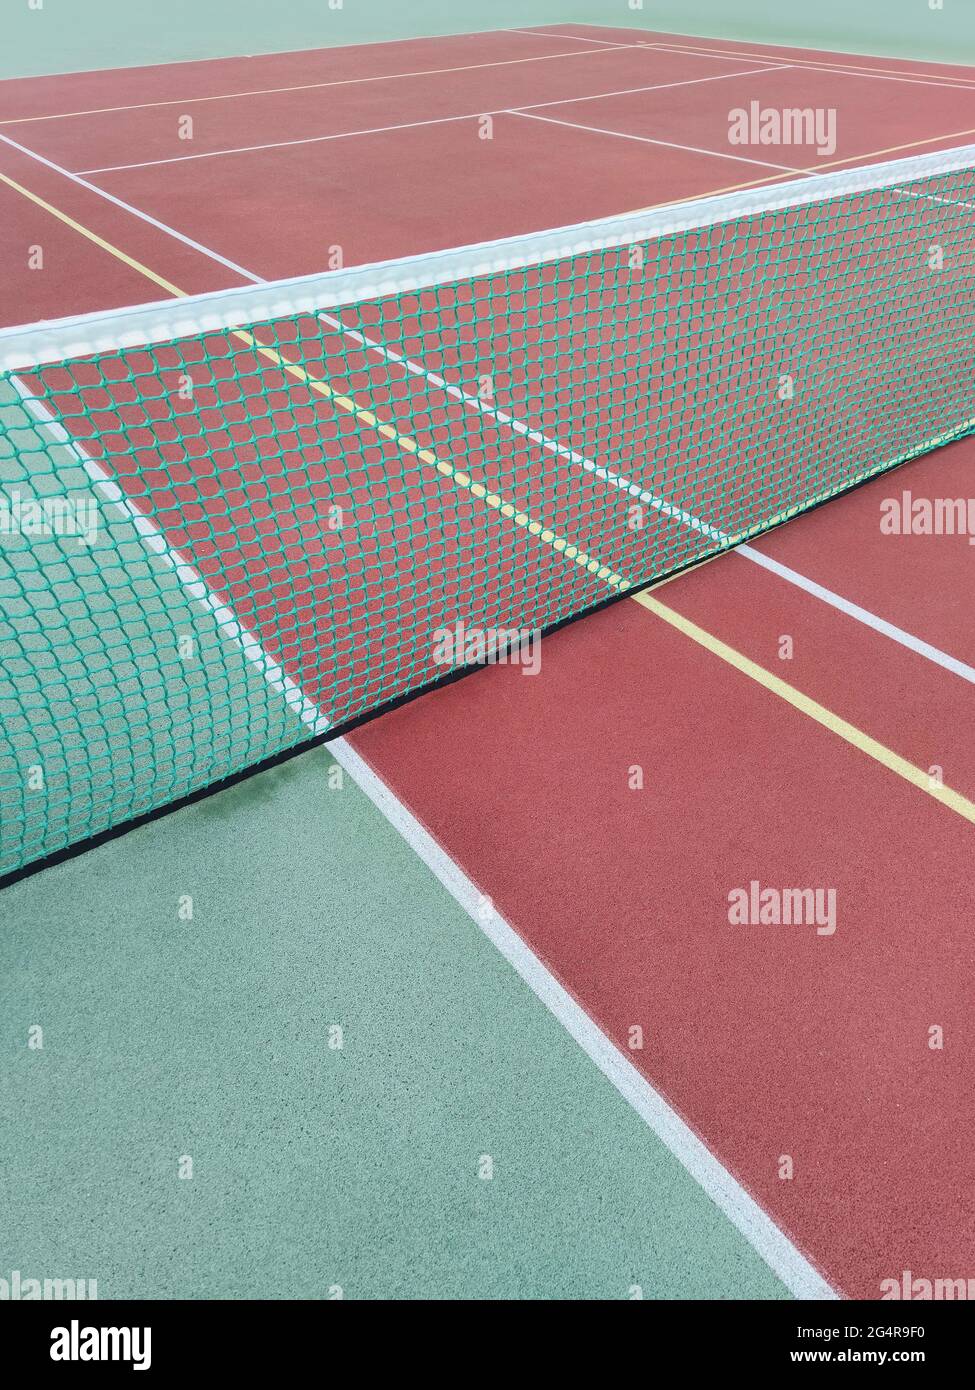 Jeu de tennis. Terrain de tennis vide. Sport, récréation concept photo Banque D'Images